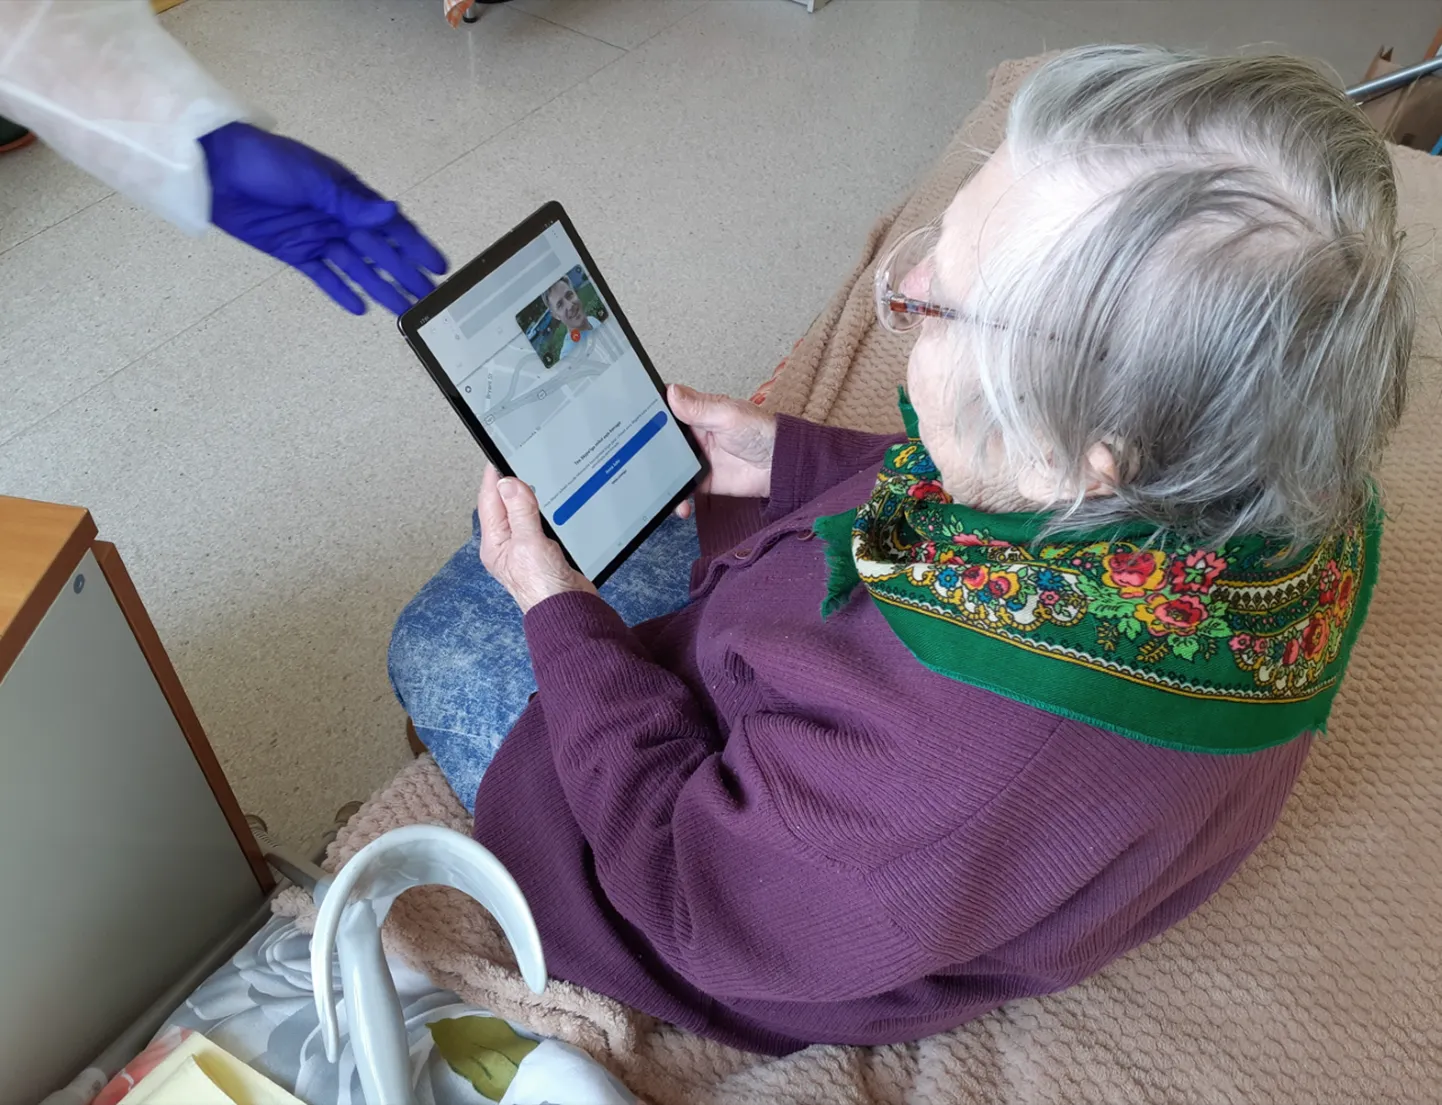 Жители домов призрения и пациенты больницы смогут общаться с близкими с помощью планшета.